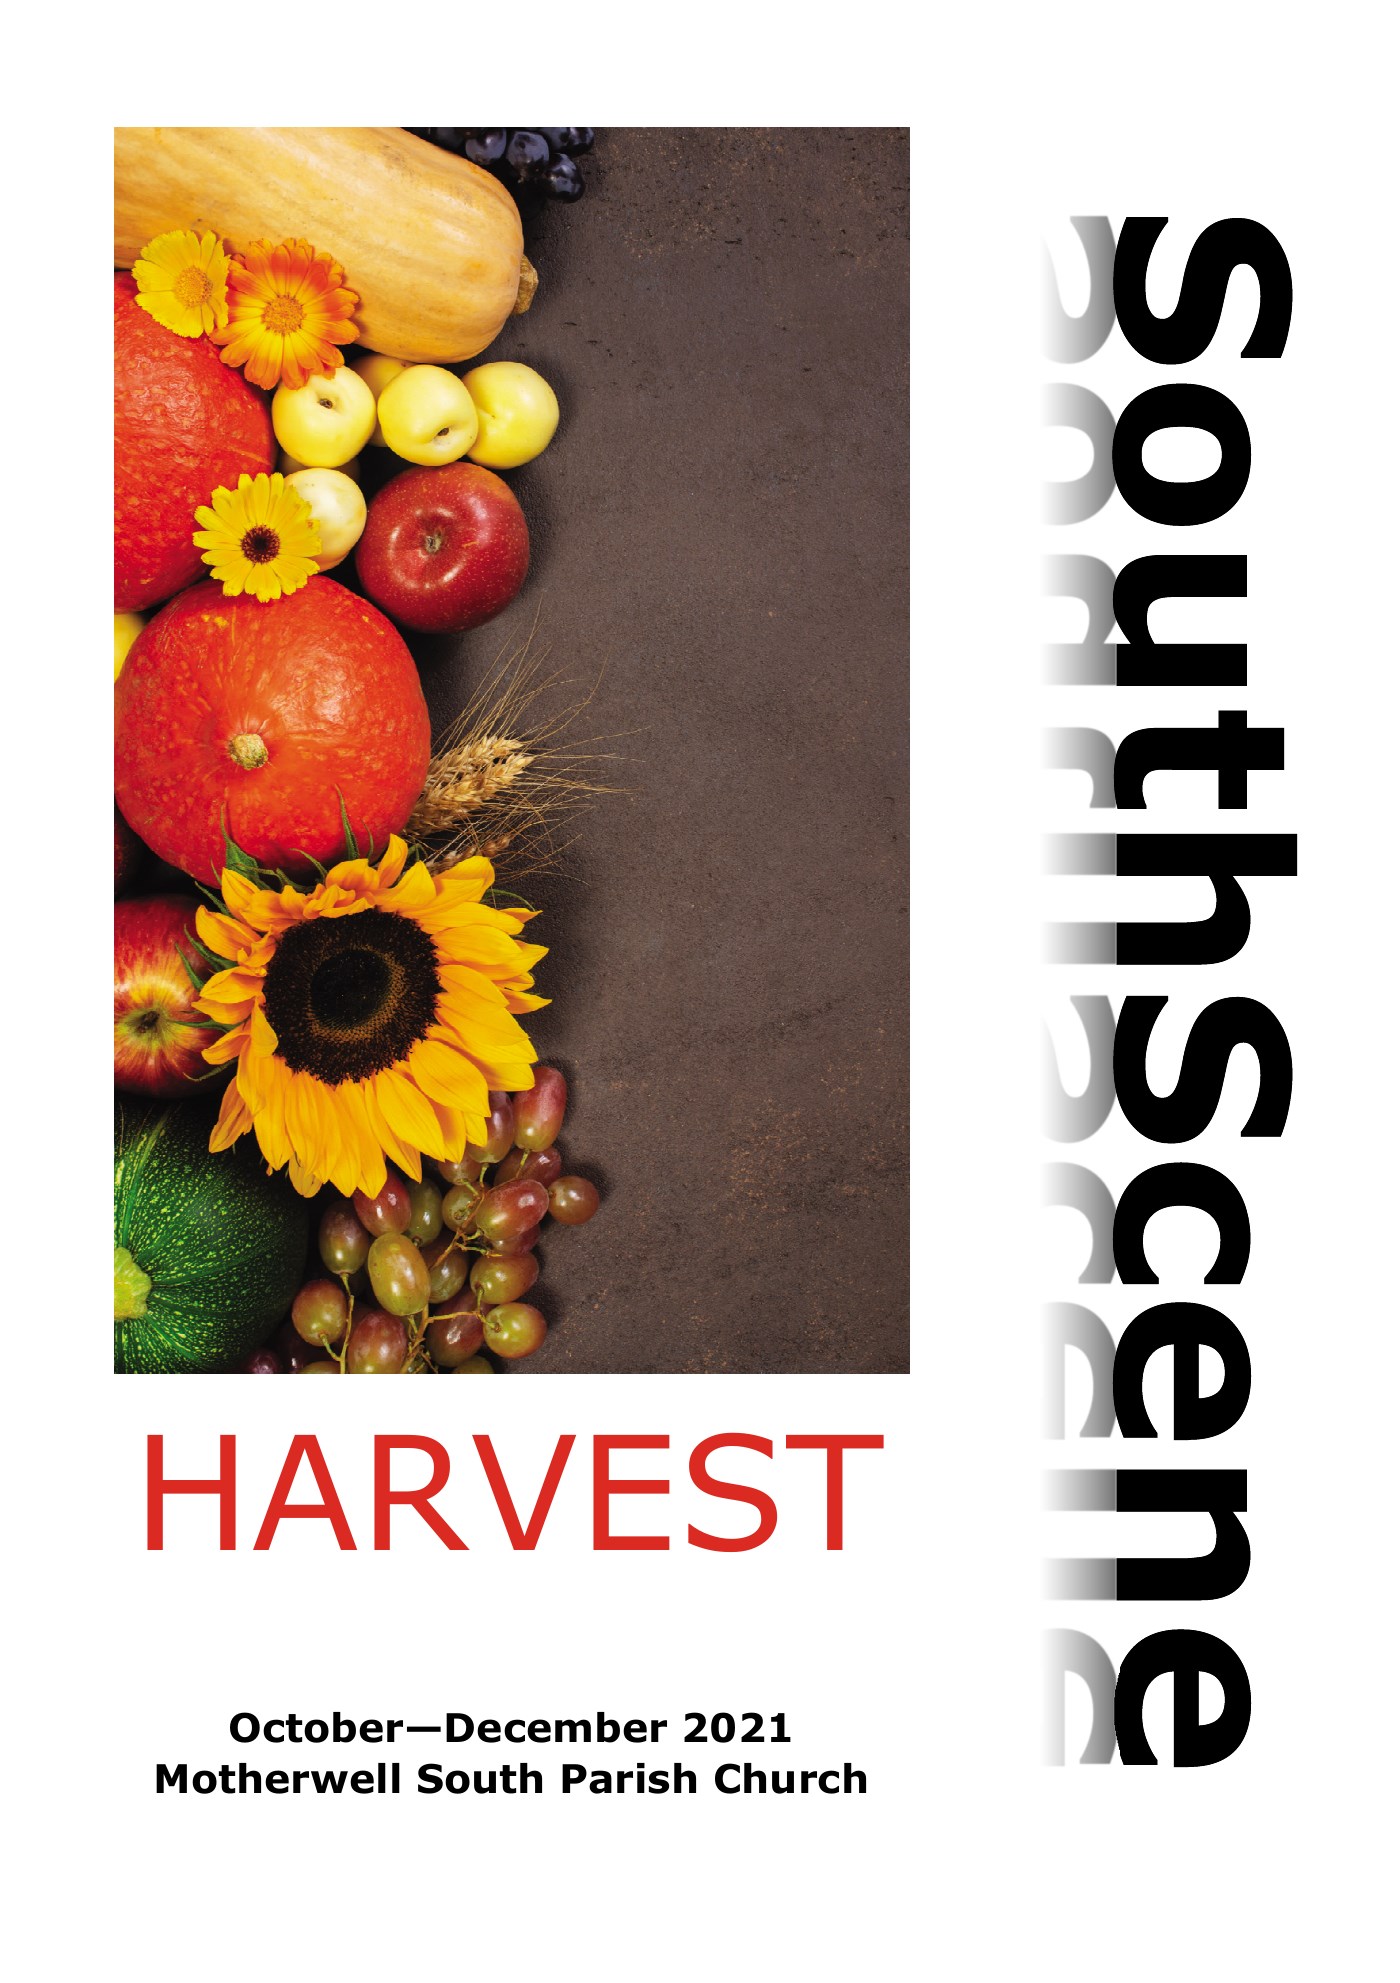 SouthScene: Harvest